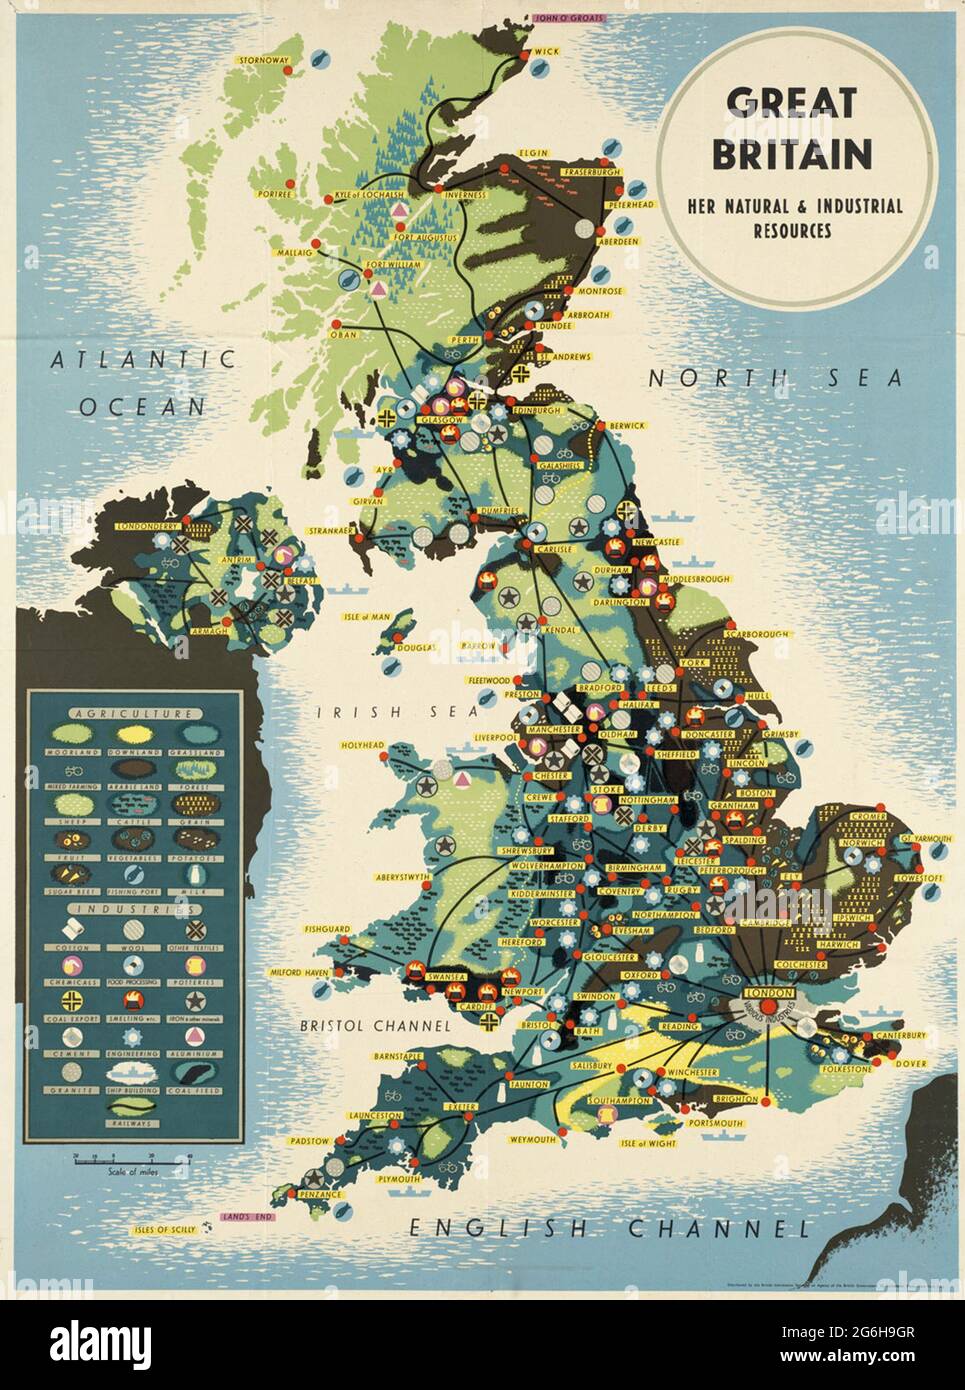 Ein Vintage-Poster, das die natürlichen und industriellen Ressourcen Großbritanniens zeigt Stockfoto